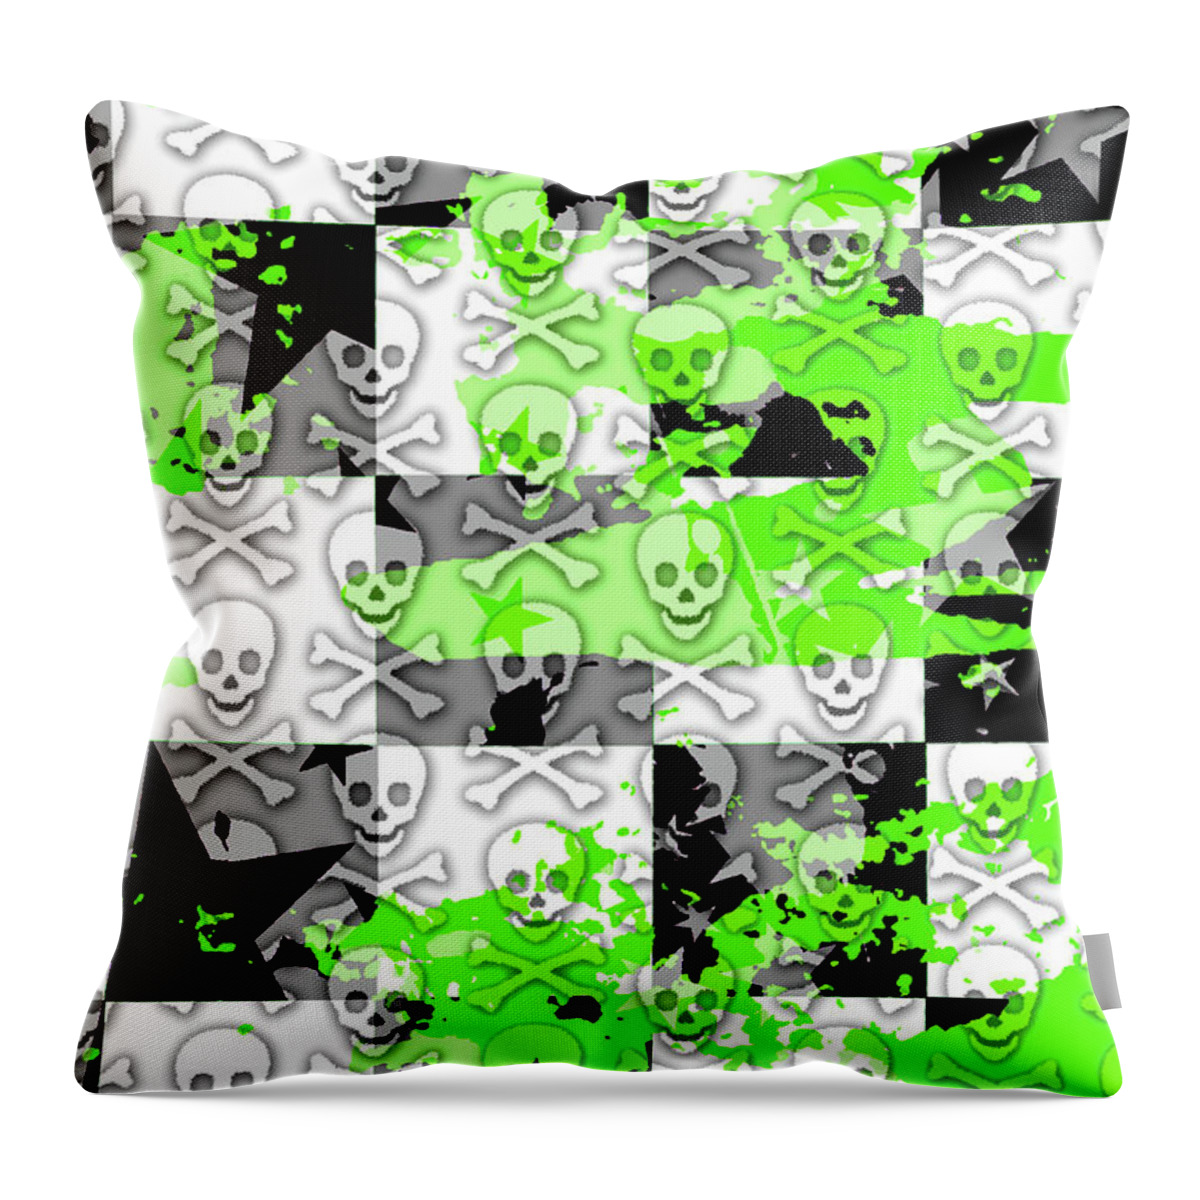 Green Throw Pillow featuring the digital art Green Checker Skull Splatter by Roseanne Jones